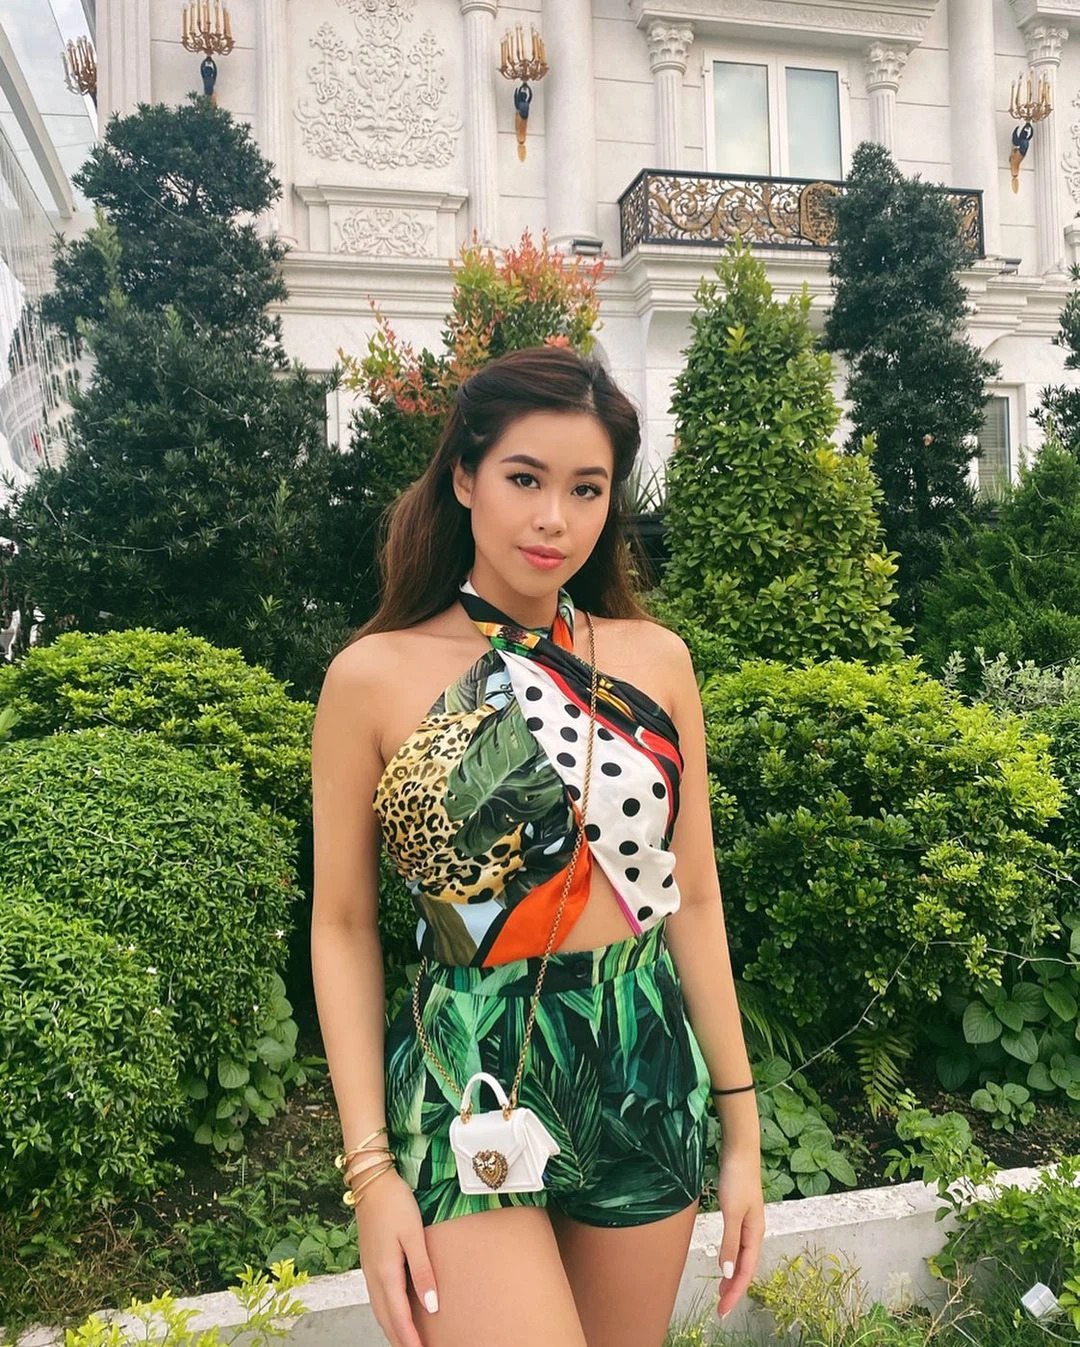 Nếu bạn muốn thử nghiệm phong cách thời trang màu sắc mà vẫn giữ được nét sang chảnh tài phiệt thì Instagram của Tiên Nguyễn là một địa chỉ nên tham khảo.